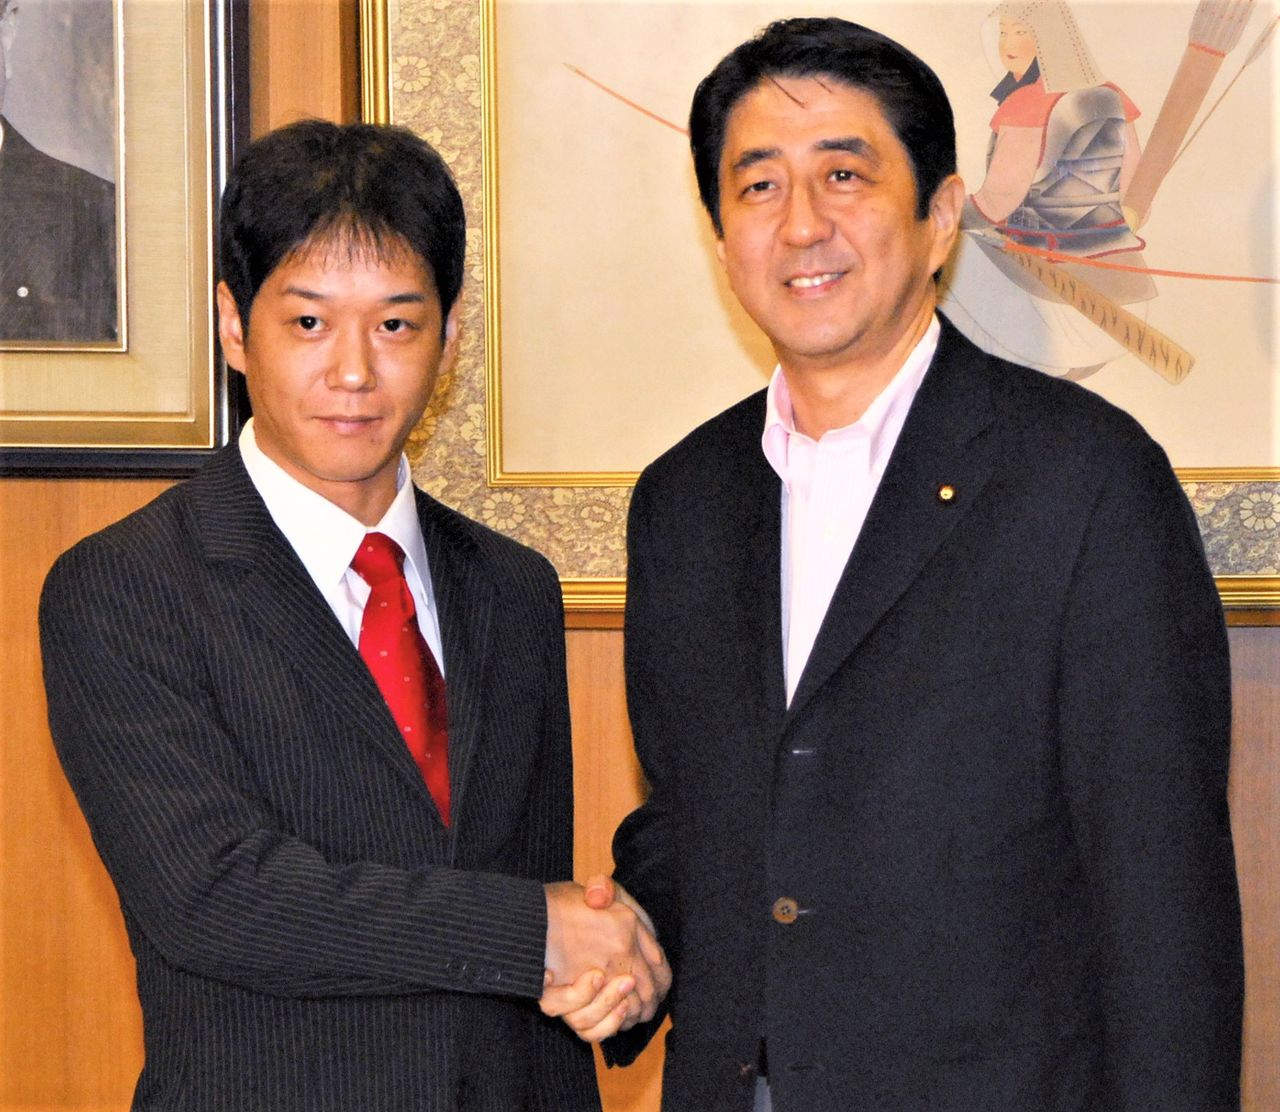 Yoshiie Hiroyuki (izquierda), apodado “El profesor yankee” por los medios de comunicación, pasó de ser un “chico malo” a profesor de instituto en su alma mater, y luego a miembro del comité de educación de la ciudad de Yokohama y profesor universitario. En las elecciones a la Cámara de Consejeros de 2007, se postuló para el Partido Liberal Democrático a pedido del primer ministro Abe Shinzō (derecha) y fue elegido. Más tarde fue miembro de la Cámara de Representantes y viceministro parlamentario de Educación, Cultura, Deporte, Ciencia y Tecnología. (Jiji Press)